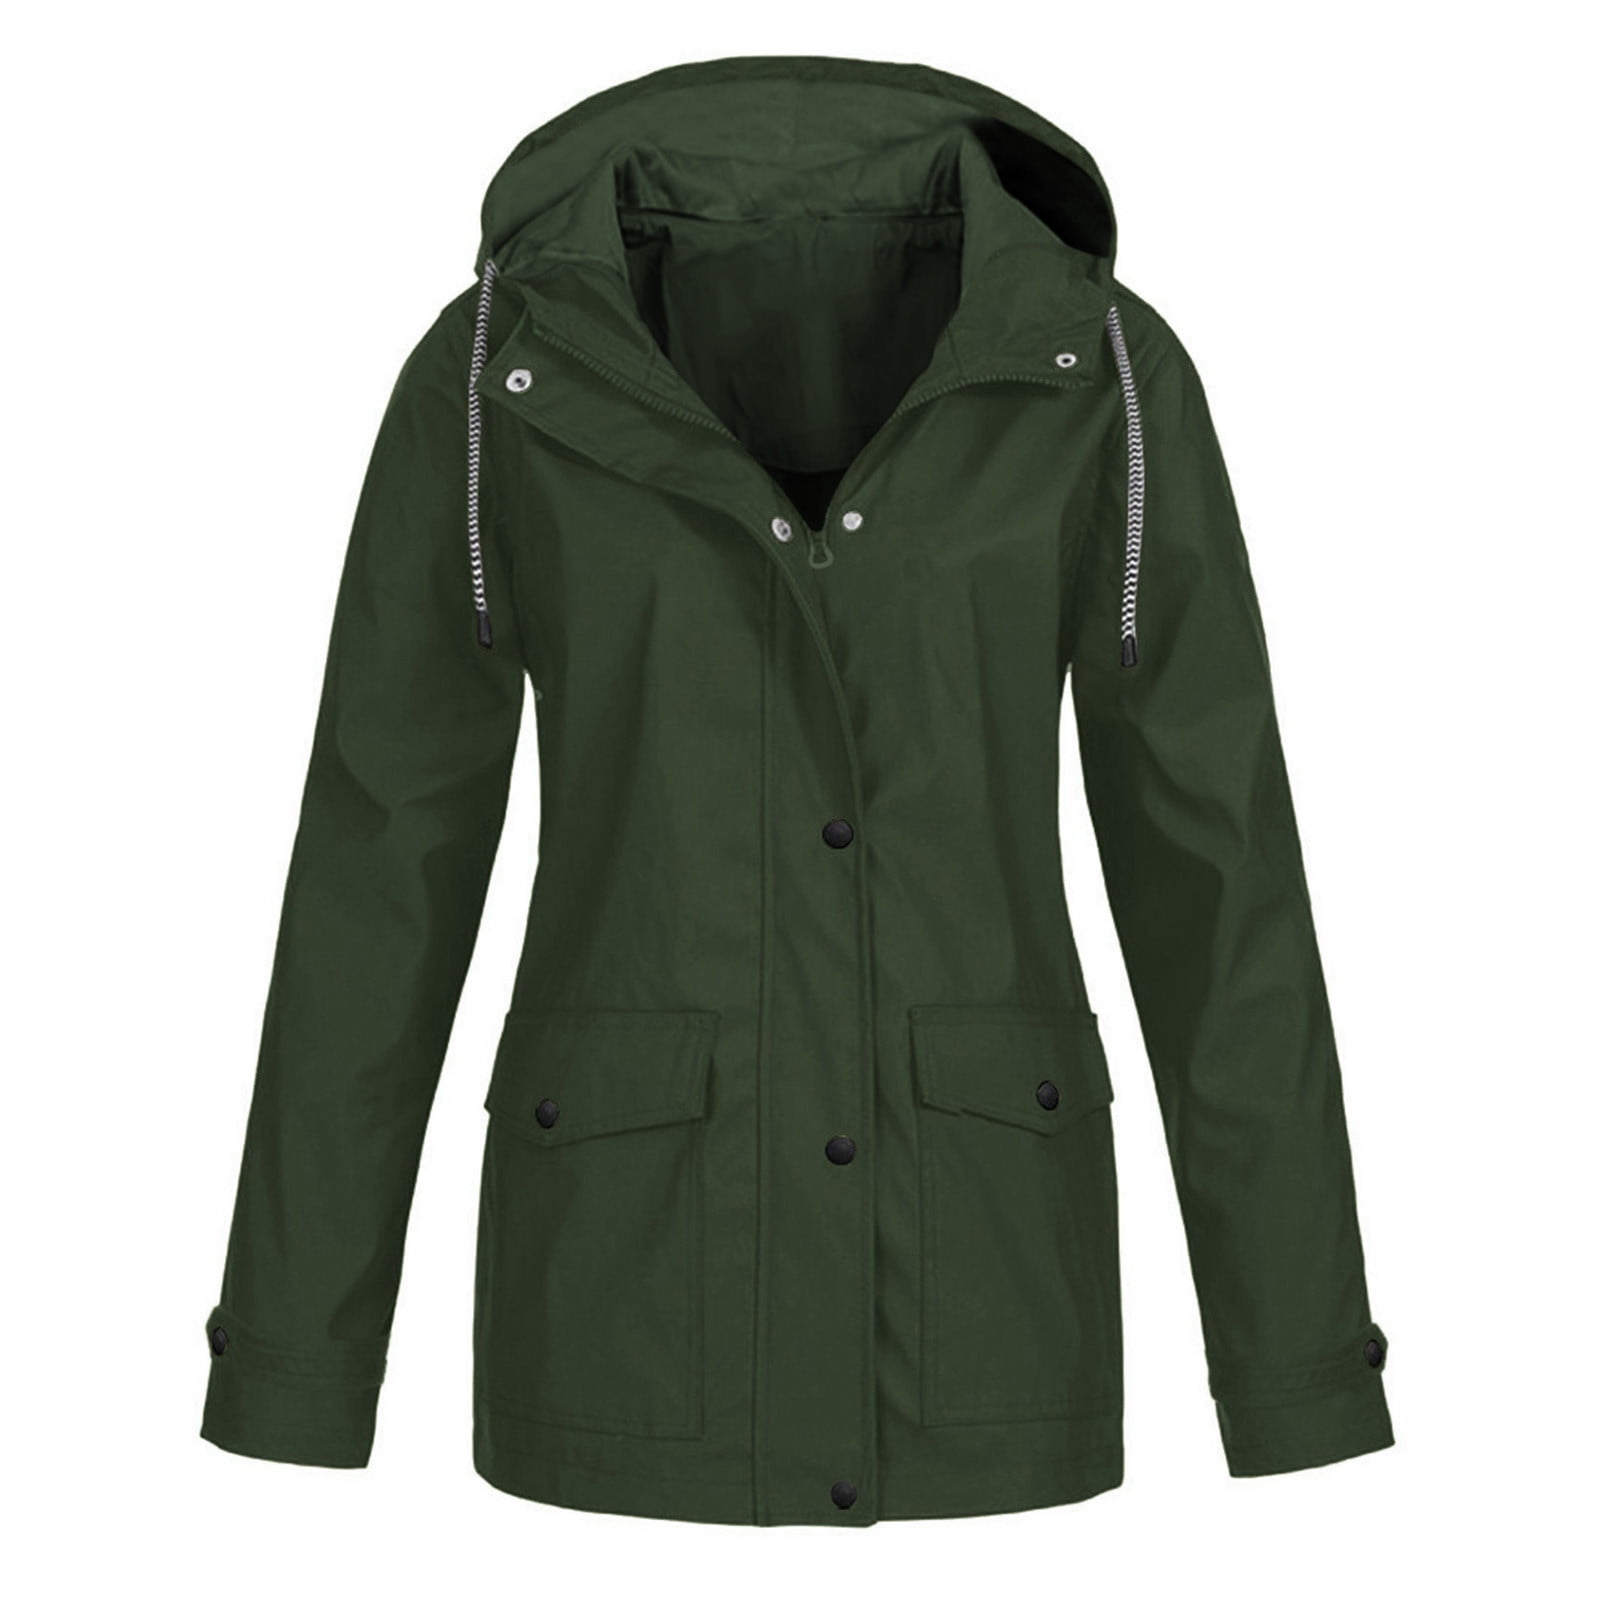 Dianli Jacket Coats for Women Sale Solid Rain Jacket Outdoor